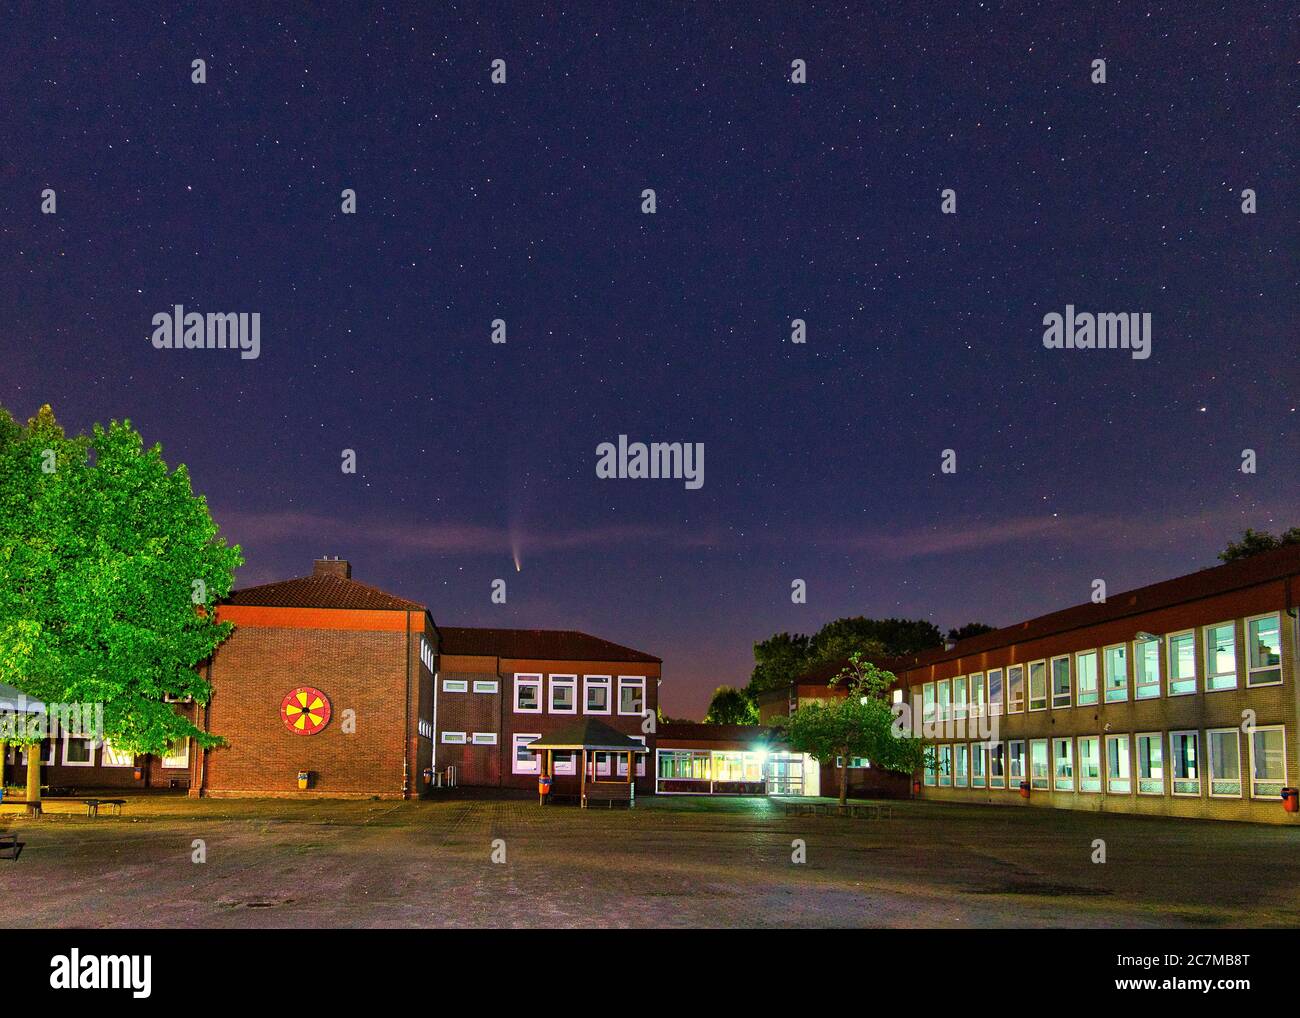 Nachtaufnahme der Albert-Trautmann-Schule, Oberschule in Werlte. Komet über dem Schulgebäude. Kein Unterricht wegen Corona. Stock Photo